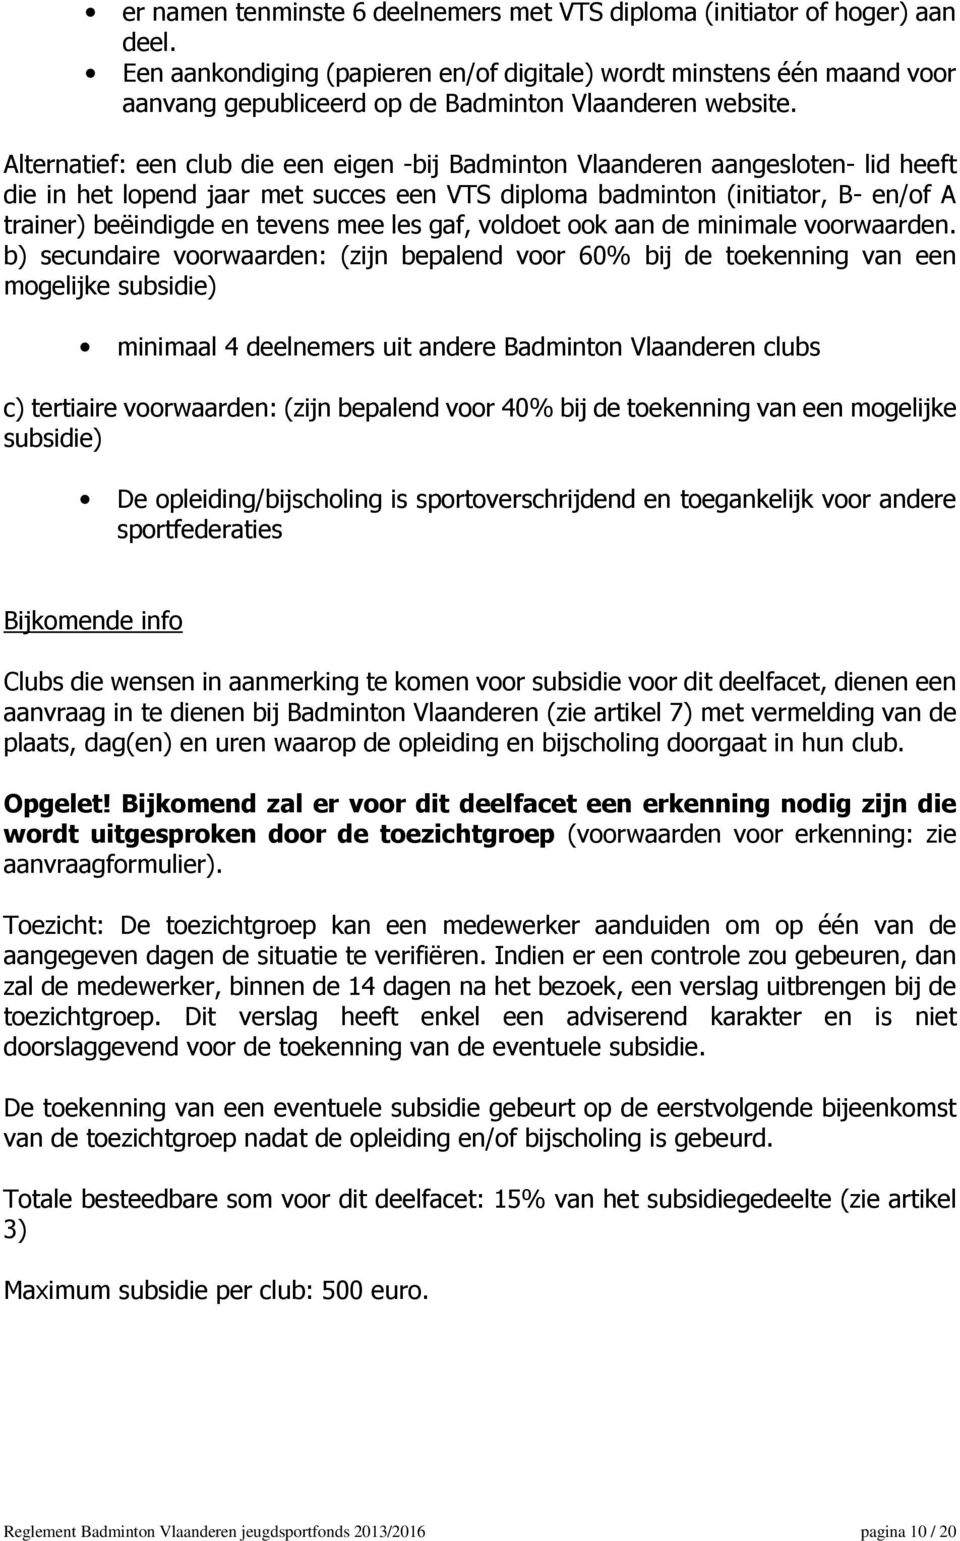 Alternatief: een club die een eigen -bij Badminton Vlaanderen aangesloten- lid heeft die in het lopend jaar met succes een VTS diploma badminton (initiator, B- en/of A trainer) beëindigde en tevens